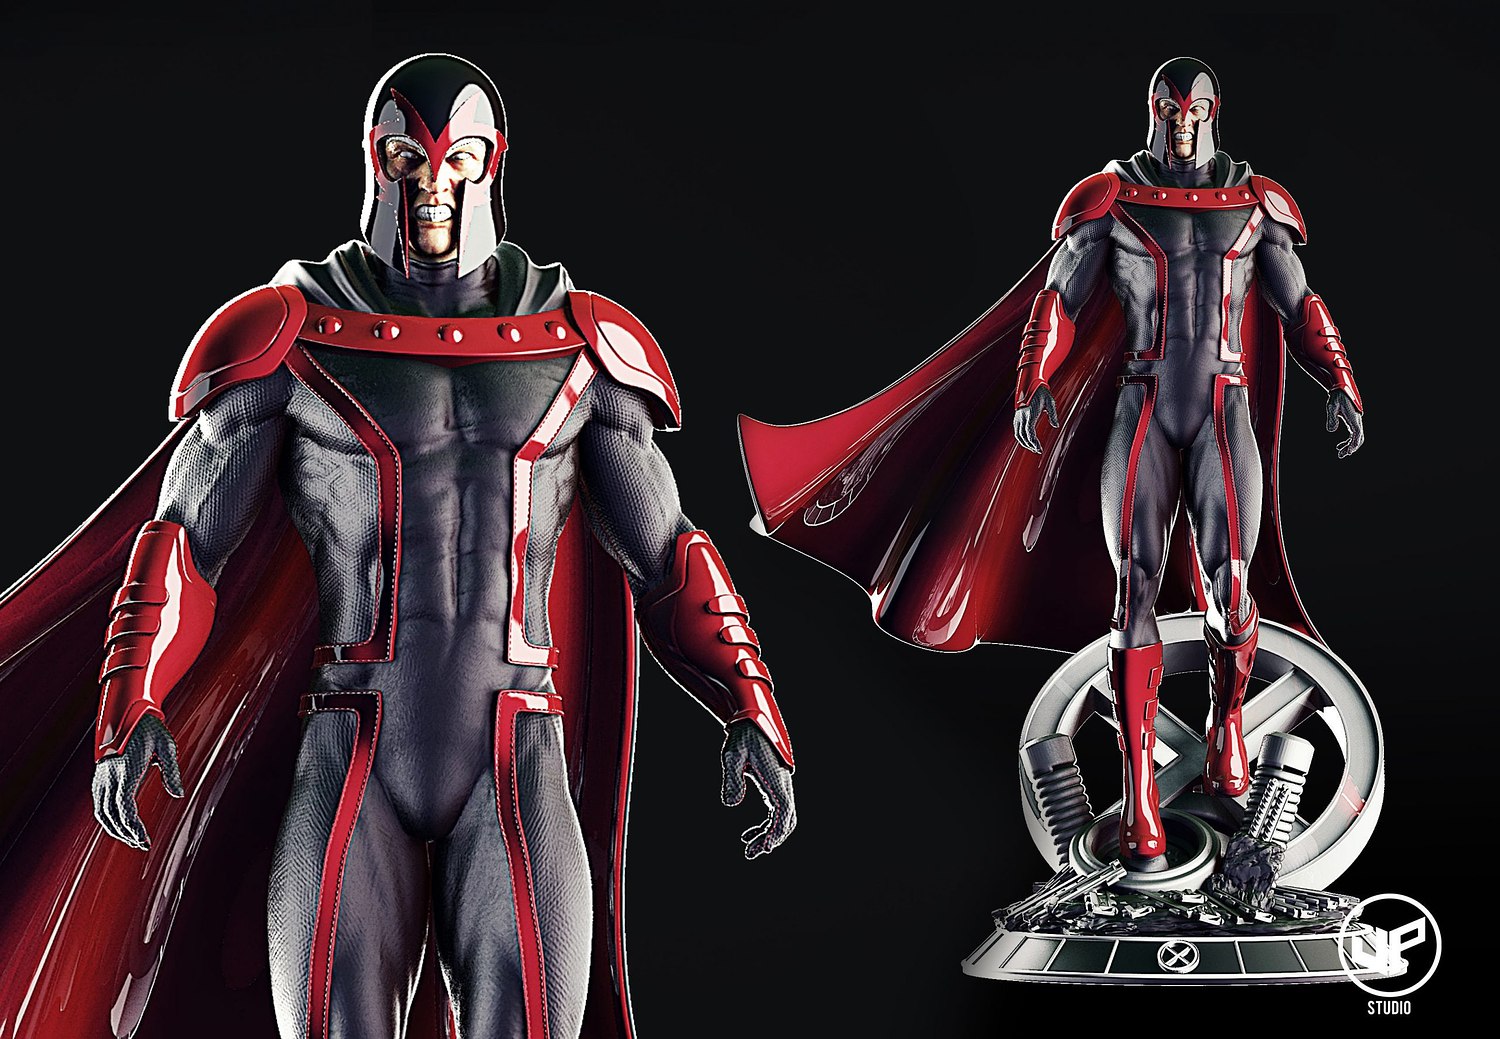 Magneto V2 from X-Men